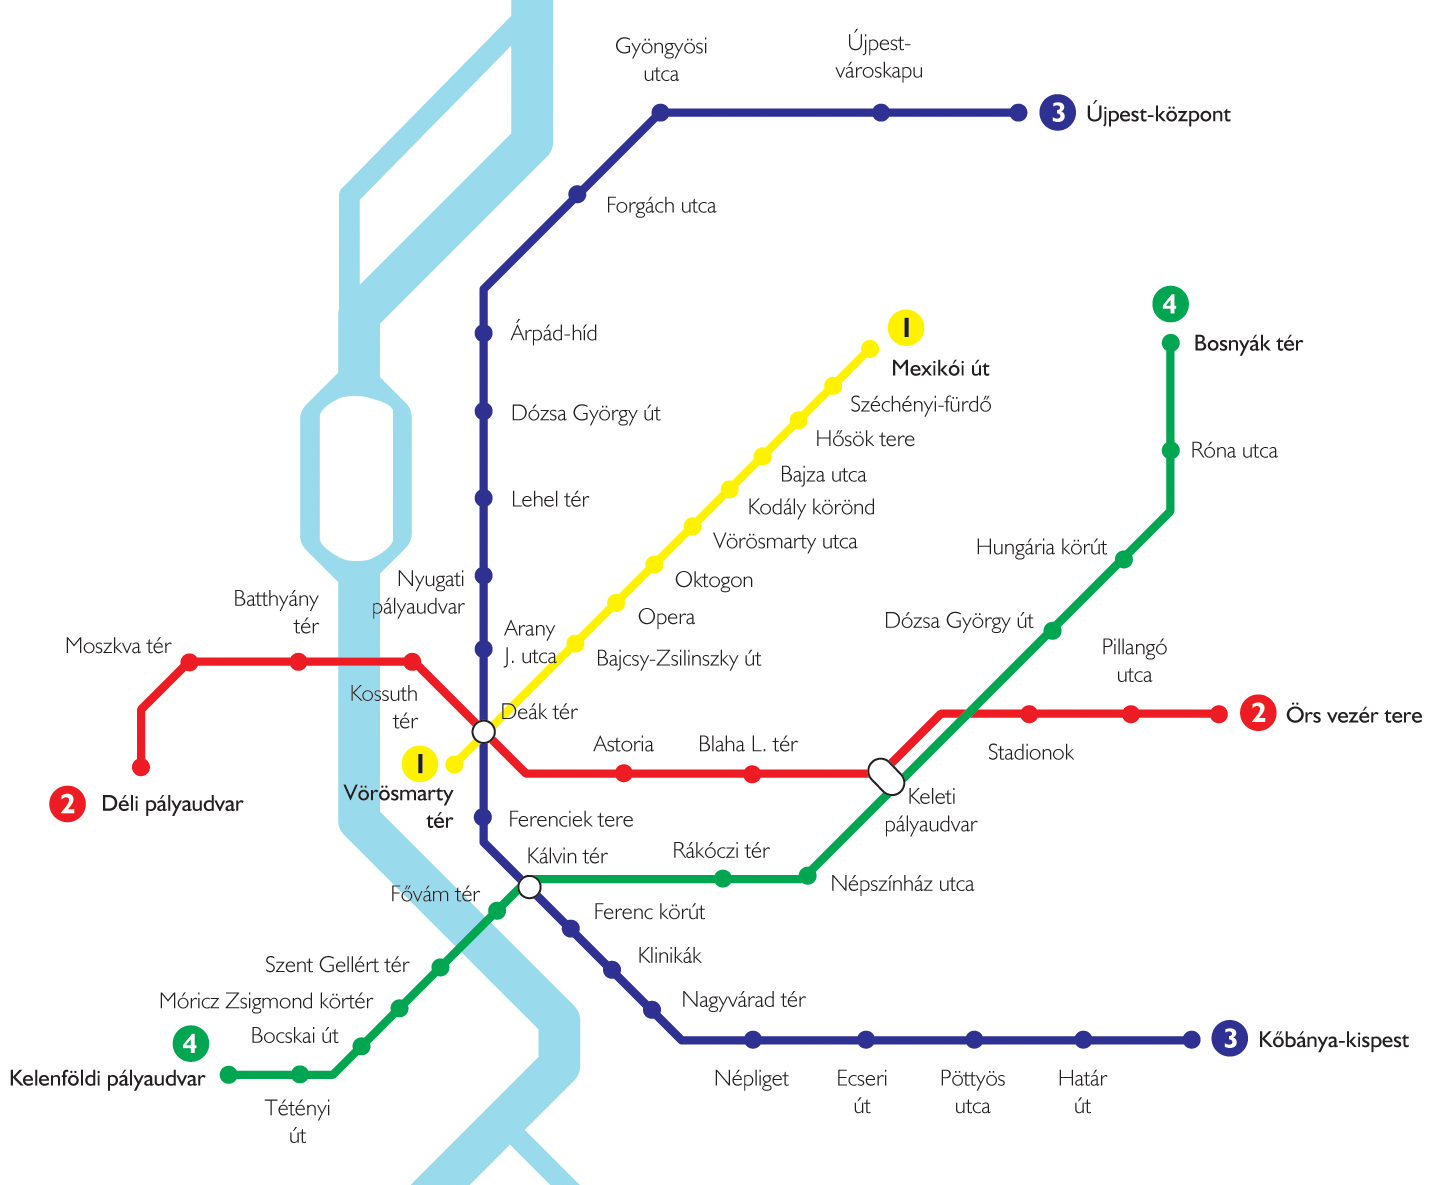 budapest metróvonalak térkép A BUDAPESTI METRÓHÁLÓZAT VEGYI TERRORTÁMADÁS ELLENI  budapest metróvonalak térkép